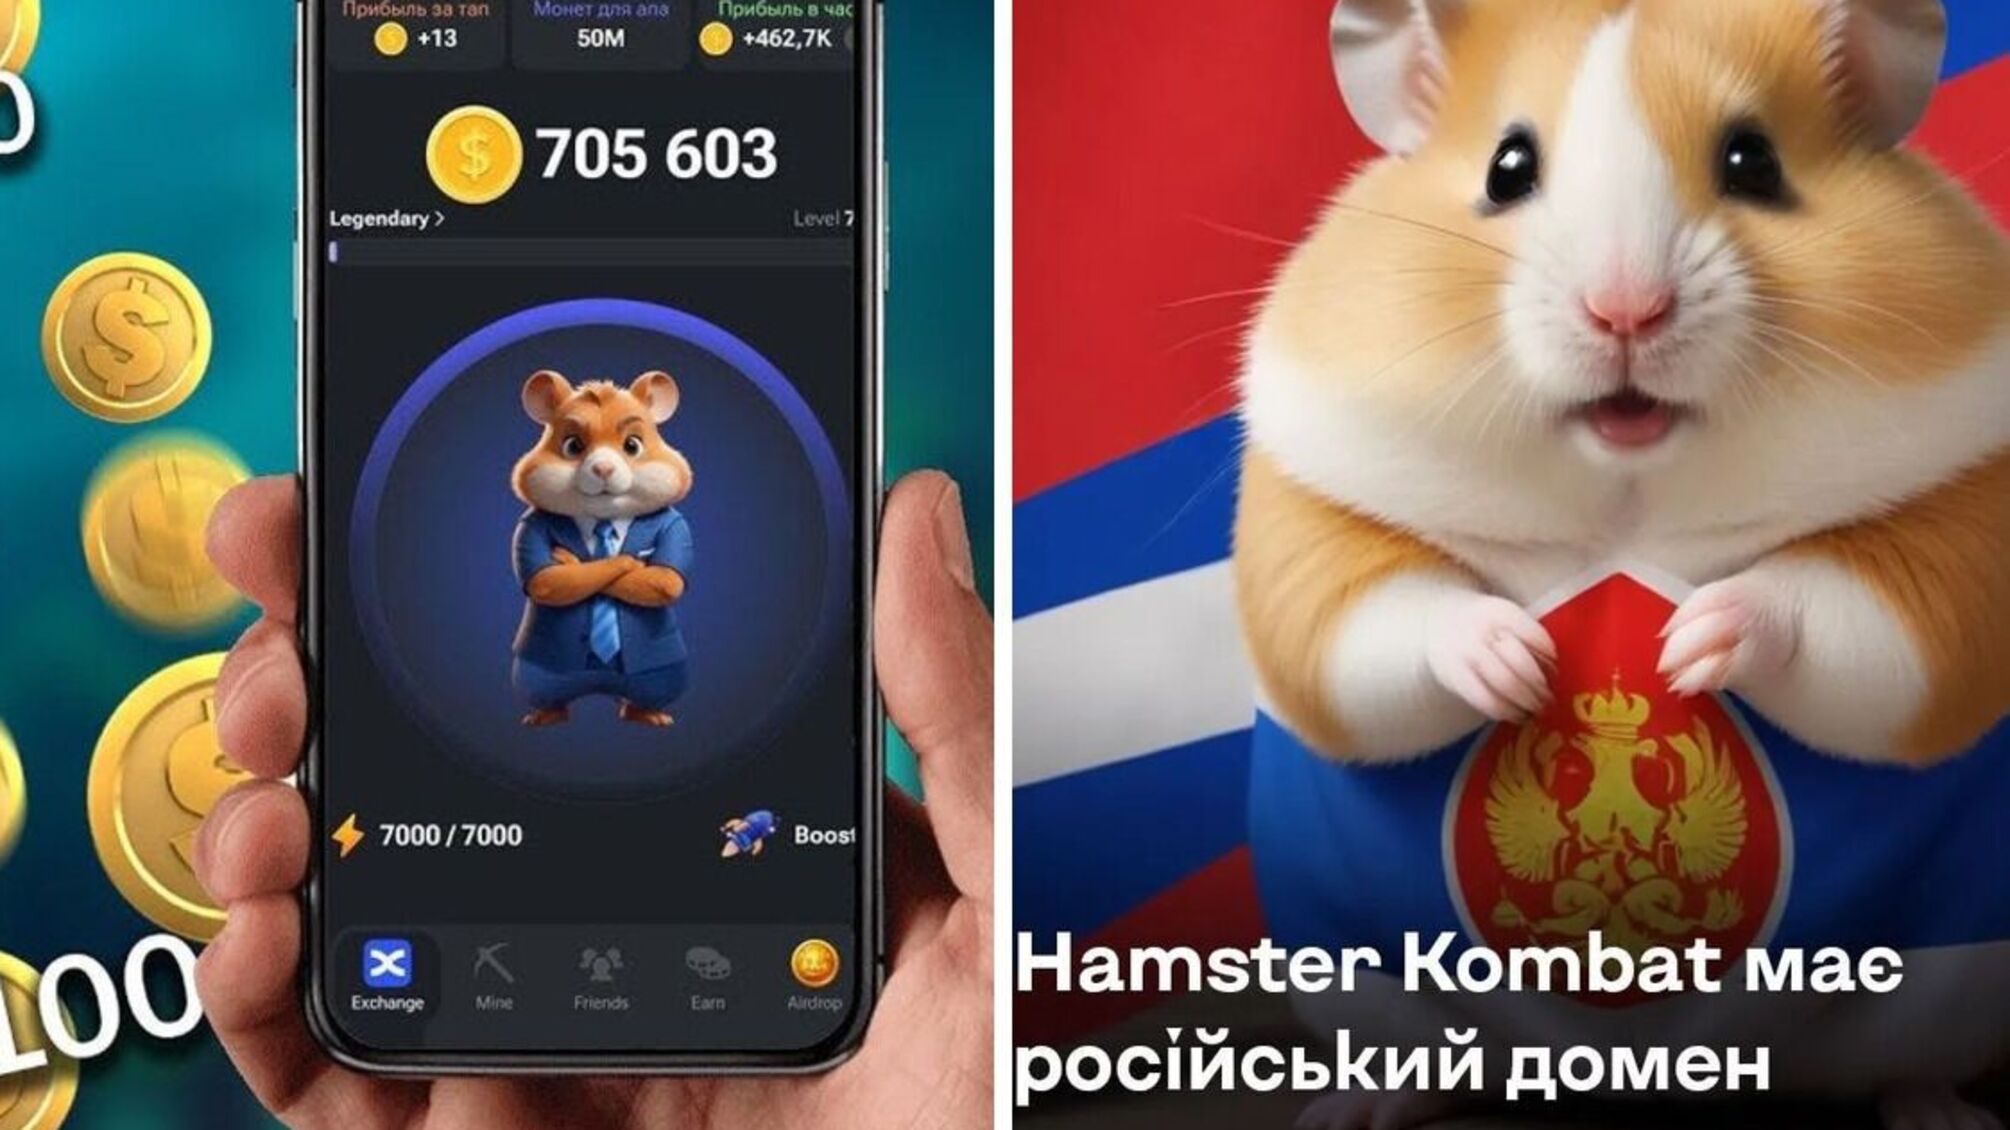 Игра Hamster Kombat: украинцев предупредили о российском происхождении и возможных угрозах